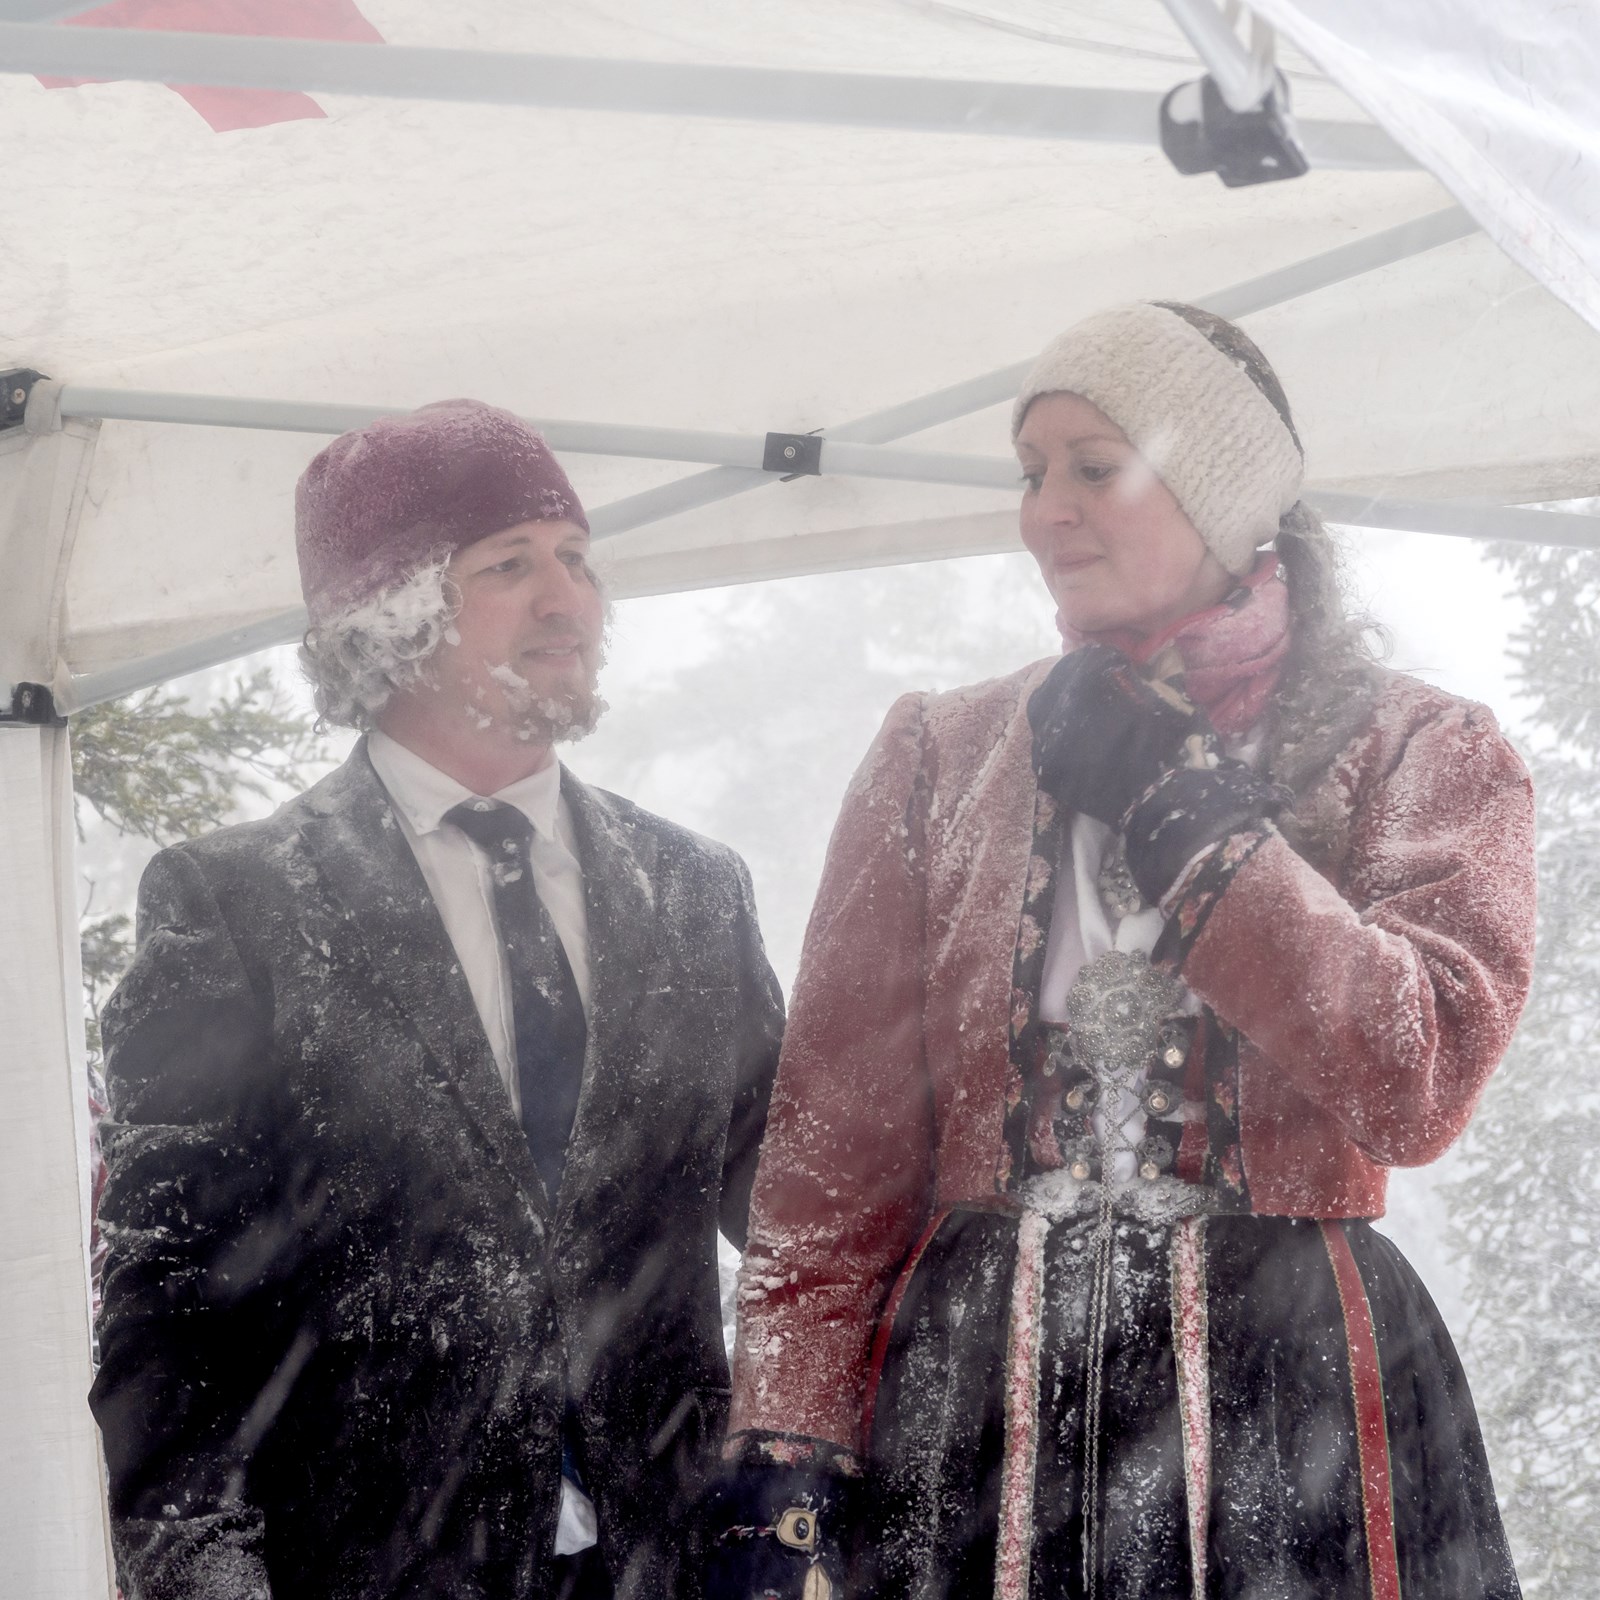 Bilde av et par som holder hverandre i hendene under et telt i snøstorm.